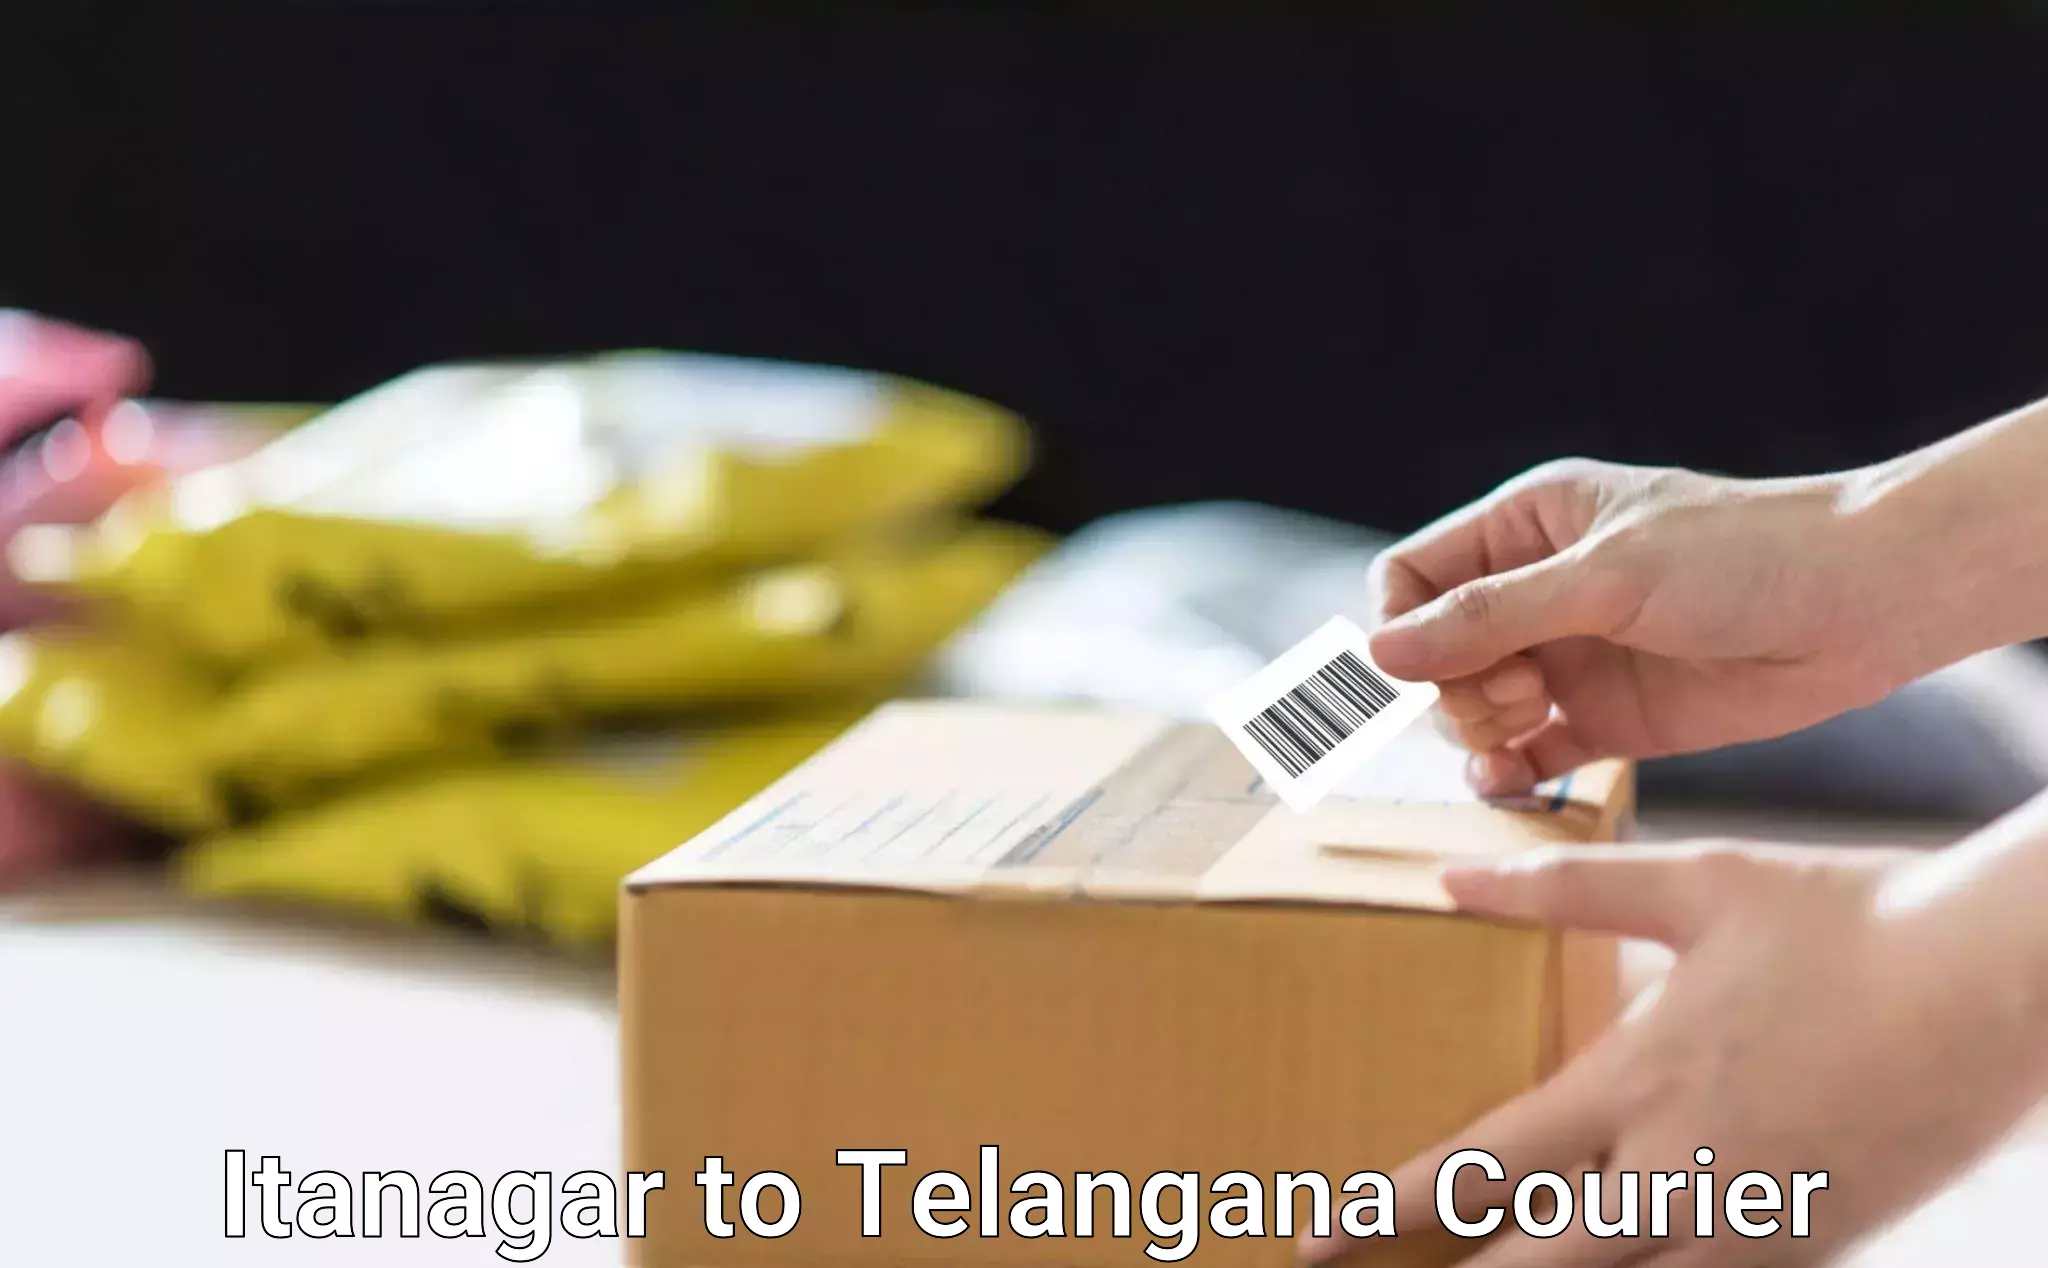 Express courier facilities Itanagar to Telangana